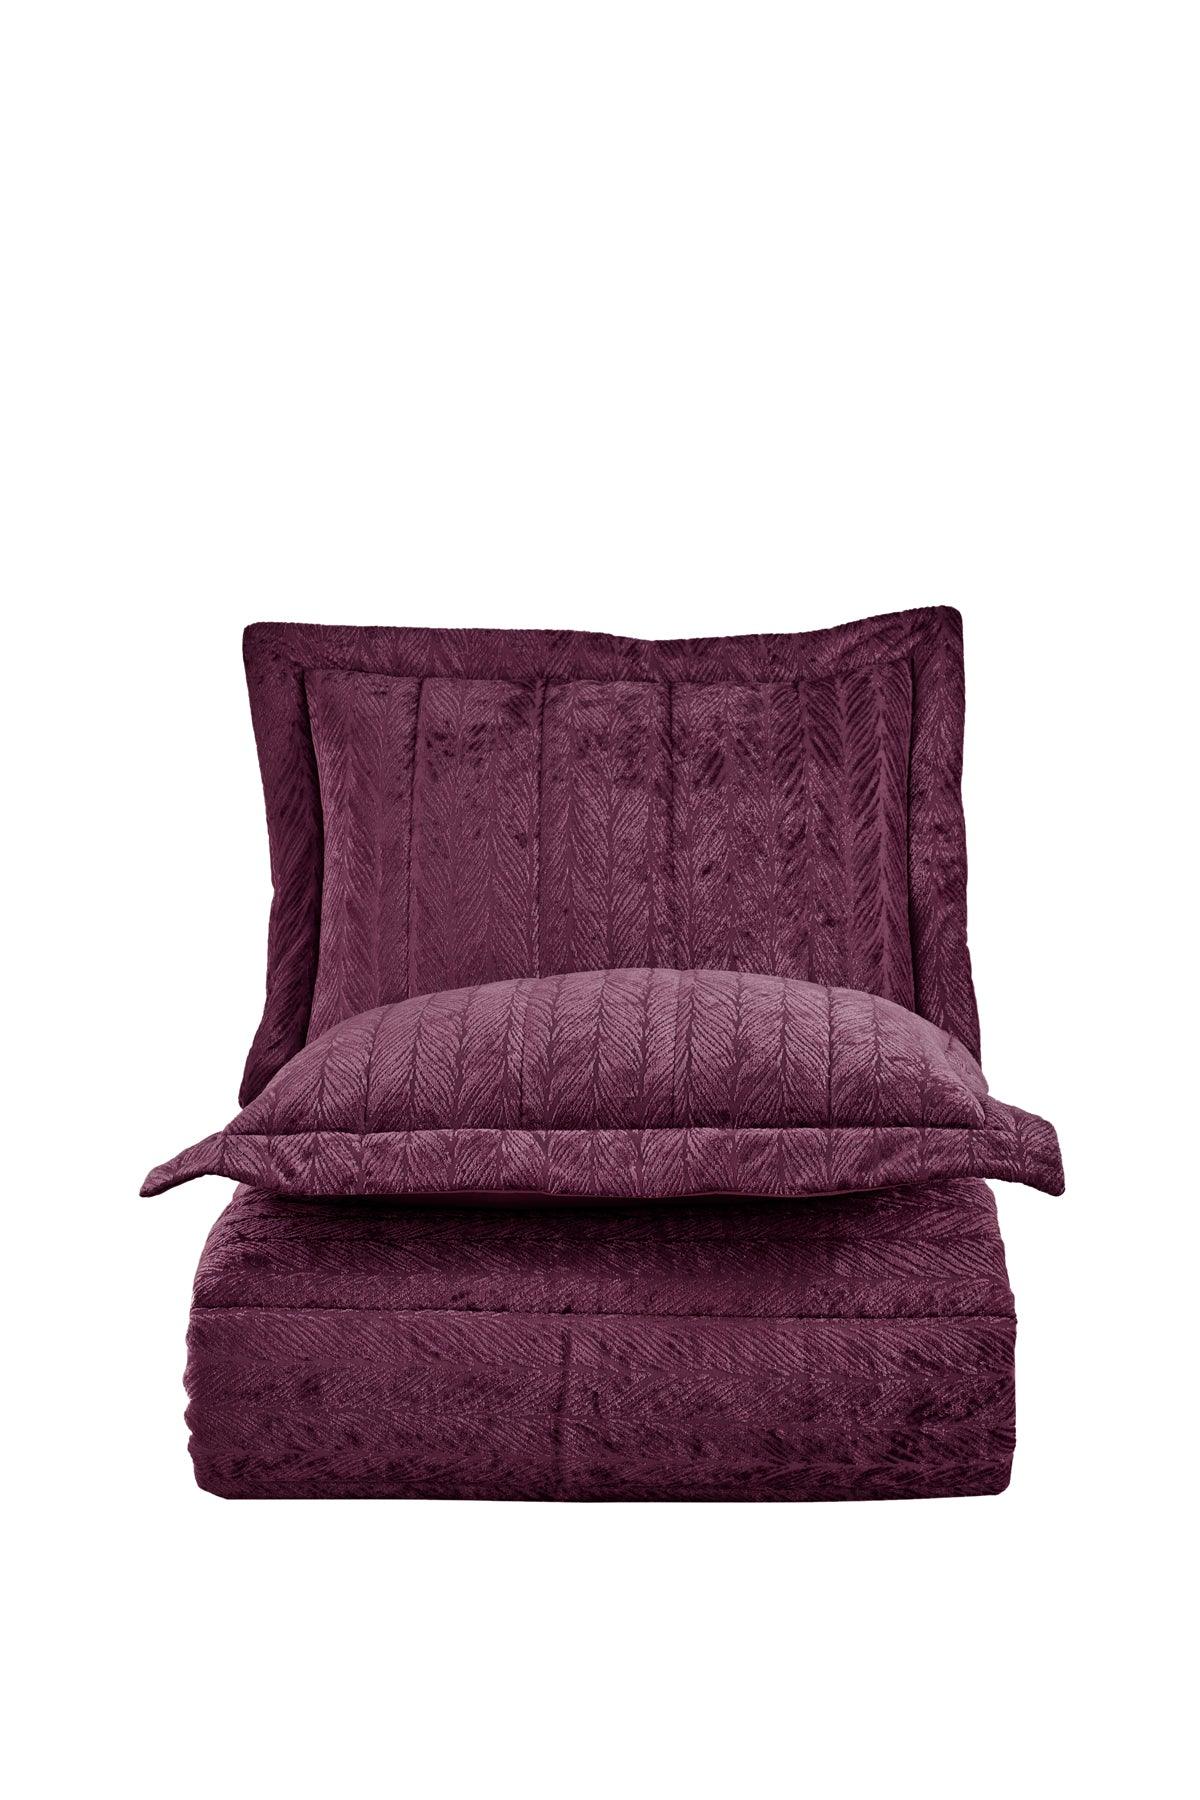 Comfort yeni nesil uykuseti - 6 parça Velvet Mürdüm (230x220cm) - Elart Home